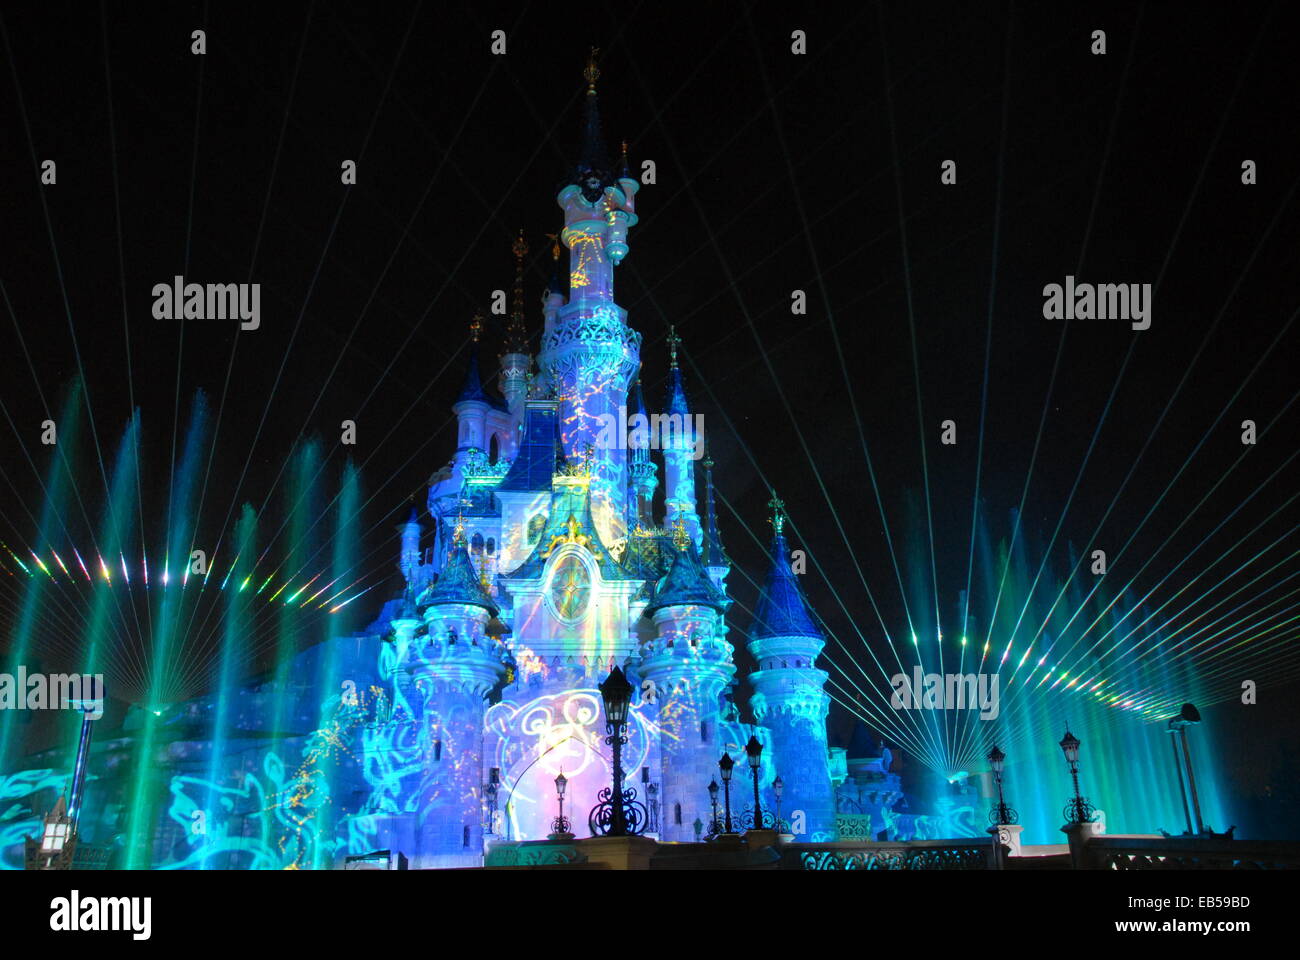 Disney Dreams 20-Jahr-Feier - Disneyland Paris November 2013/14 Feuerwerk & Licht zeigen Dornröschenschloss Stockfoto